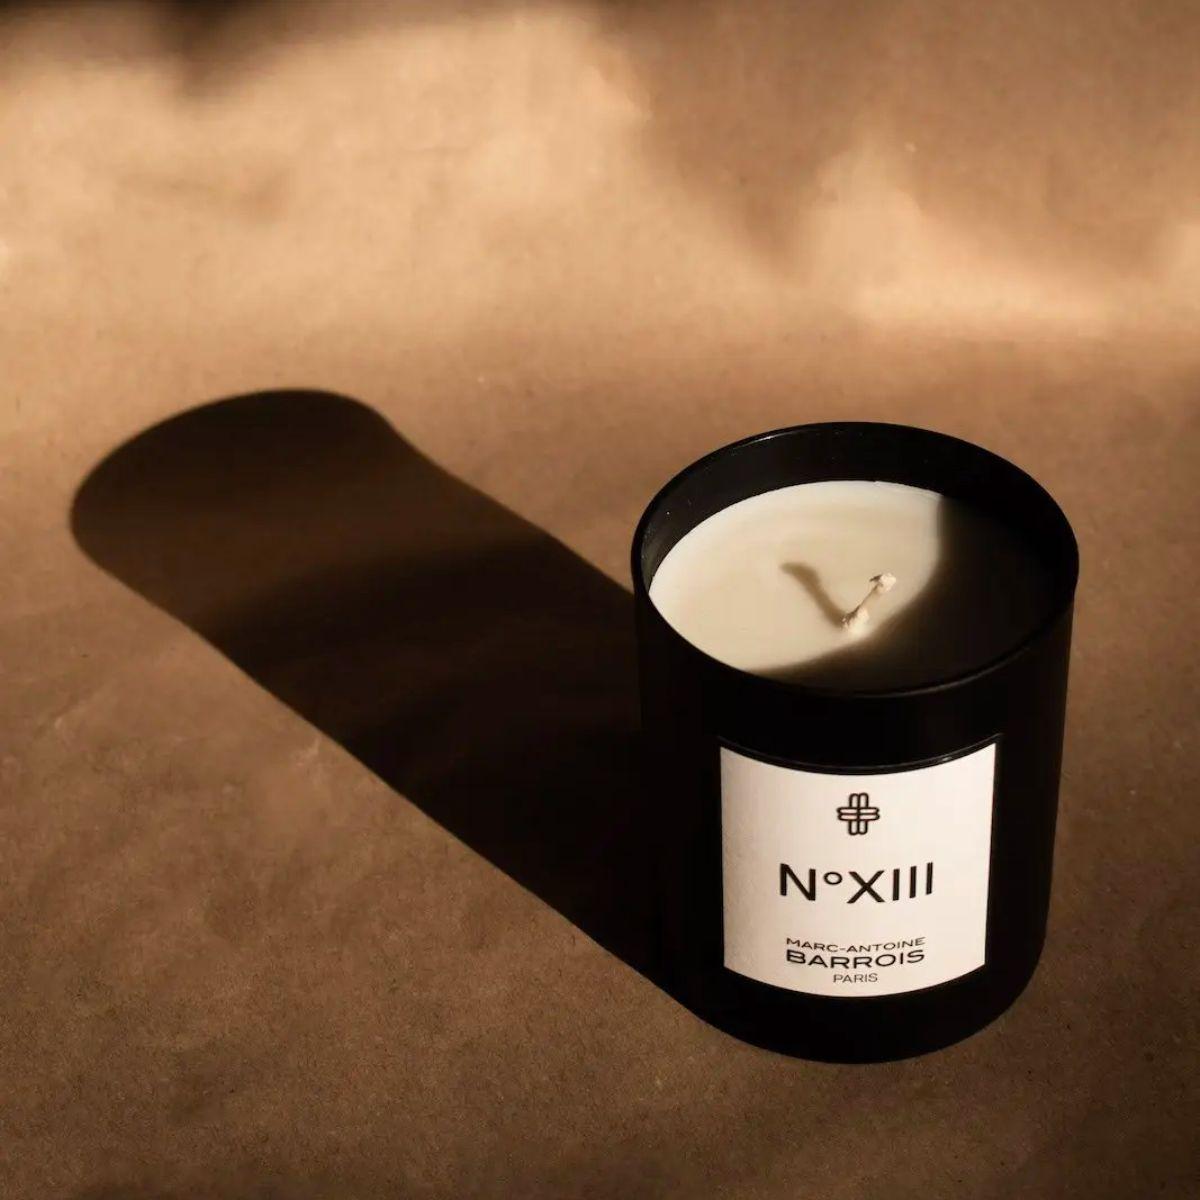 Afbeelding van No13 scented candle 75 gram van het parfum merk Marc-Antoine Barrois